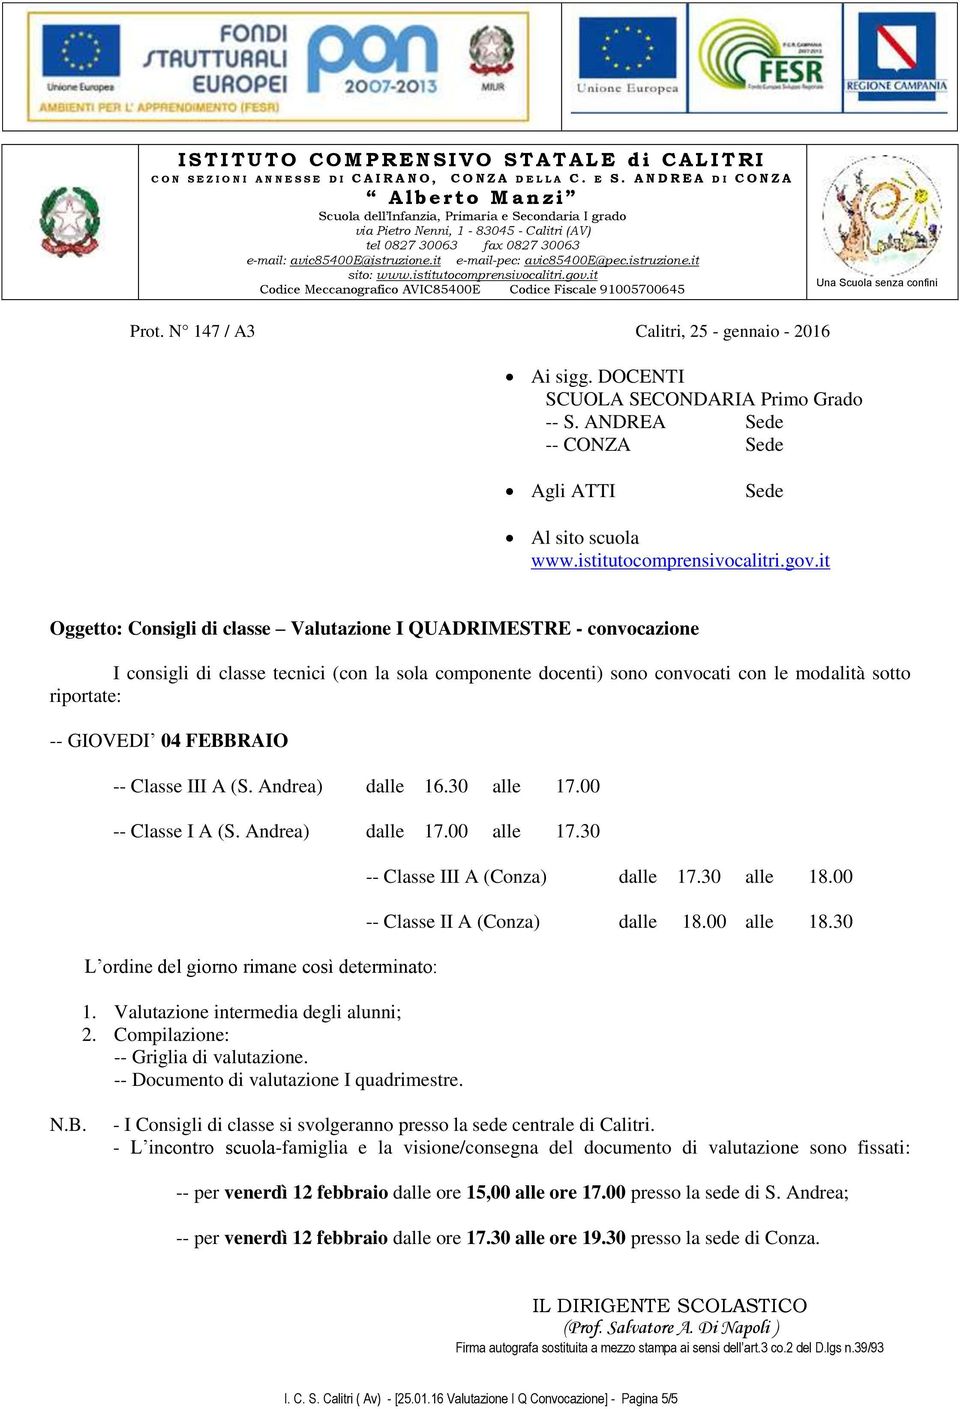 GIOVEDI 04 FEBBRAIO -- Classe III A (S. Andrea) dalle 16.30 alle 17.00 -- Classe I A (S. Andrea) dalle 17.00 alle 17.30 -- Classe III A (Conza) dalle 17.30 alle 18.